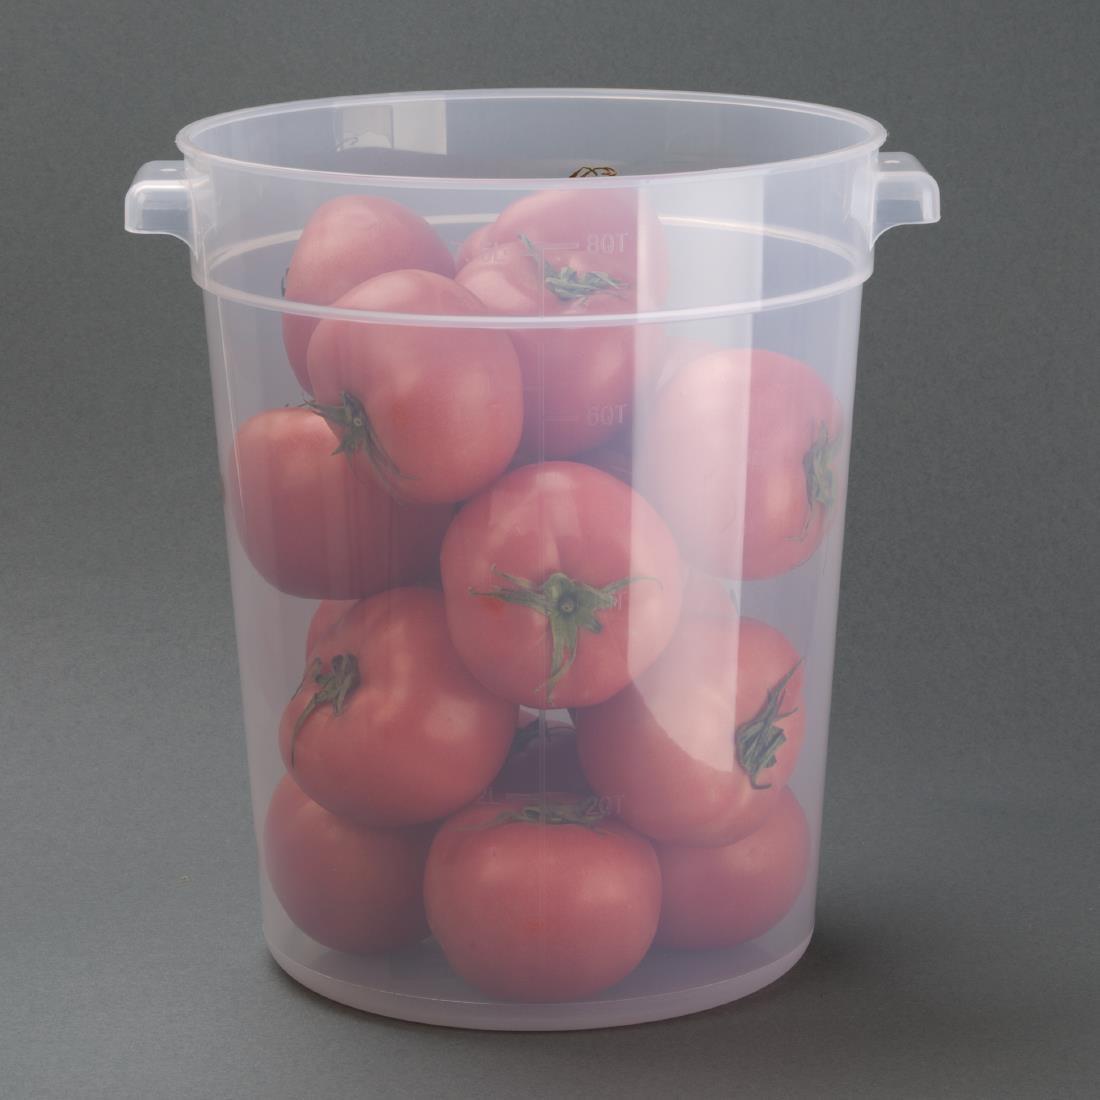 Vogue Polypropylene Round Food Storage Container 7.5Ltr - DJ960  - 6